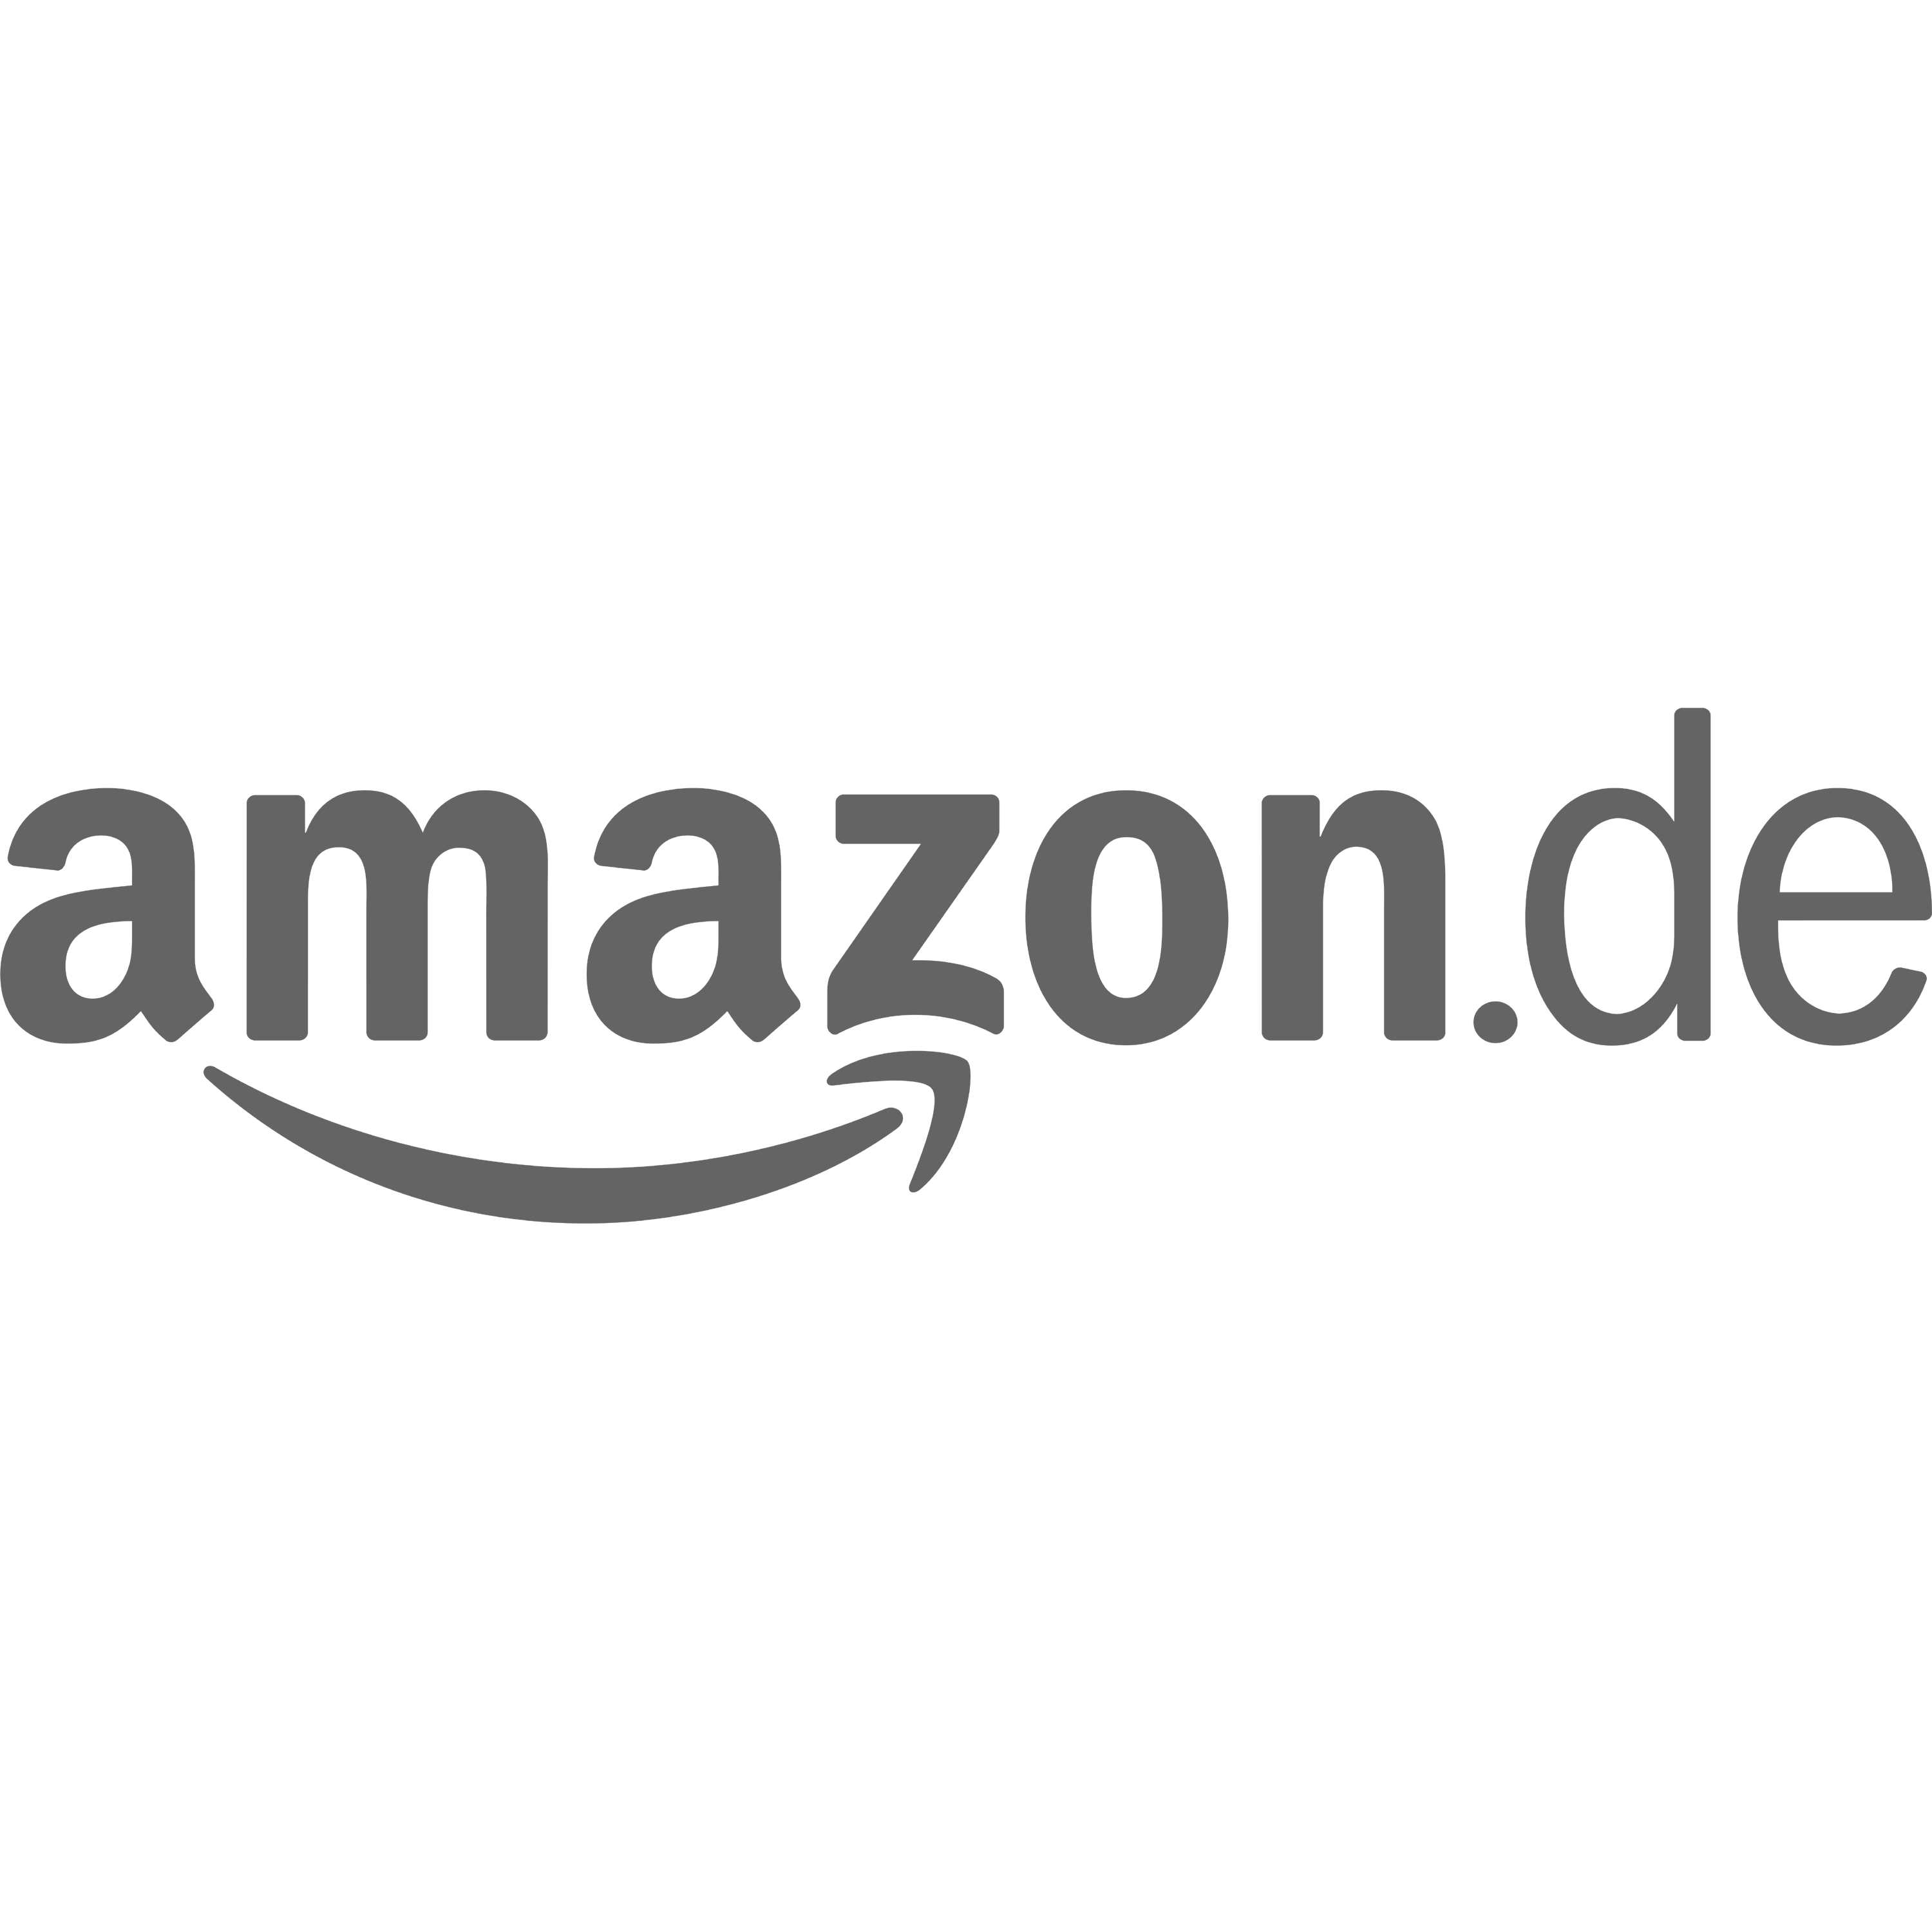 Amazon.de Logo Transparent Picture